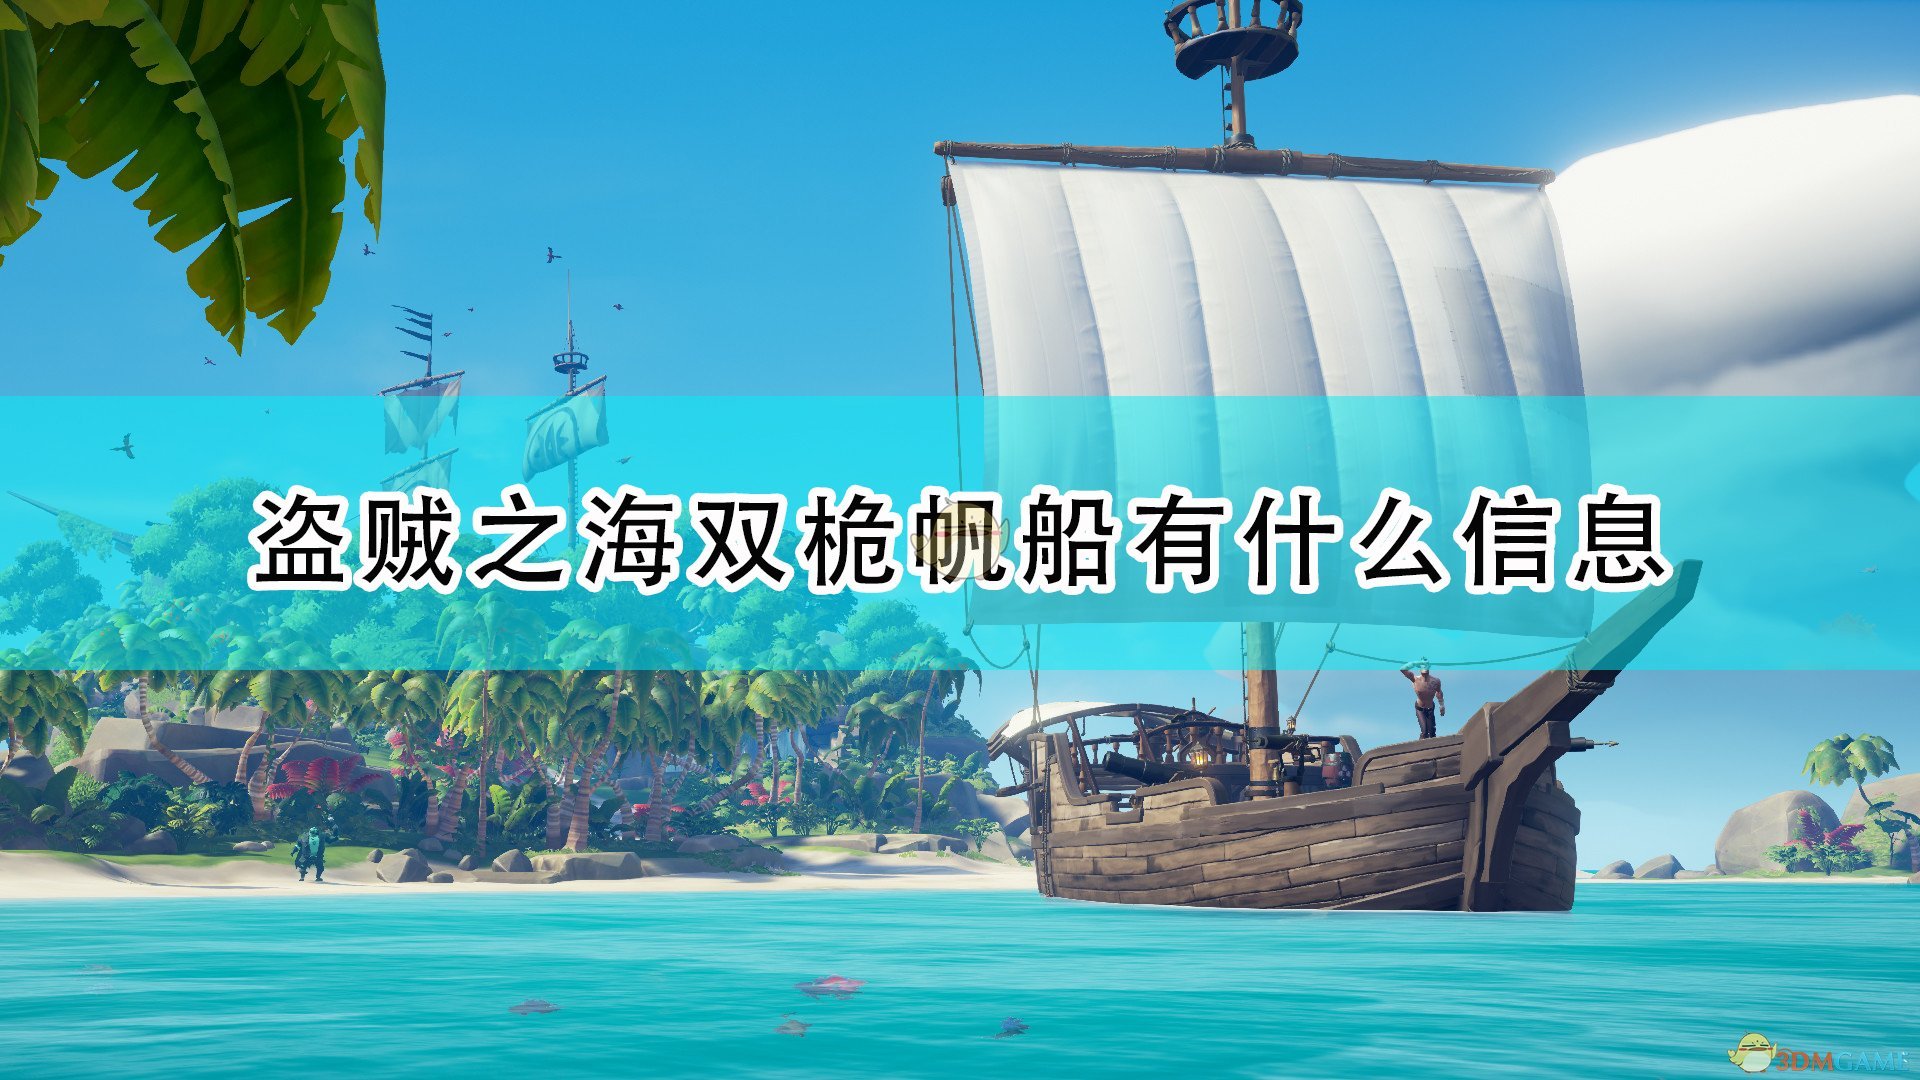 《盜賊之海》雙桅帆船詳細介紹